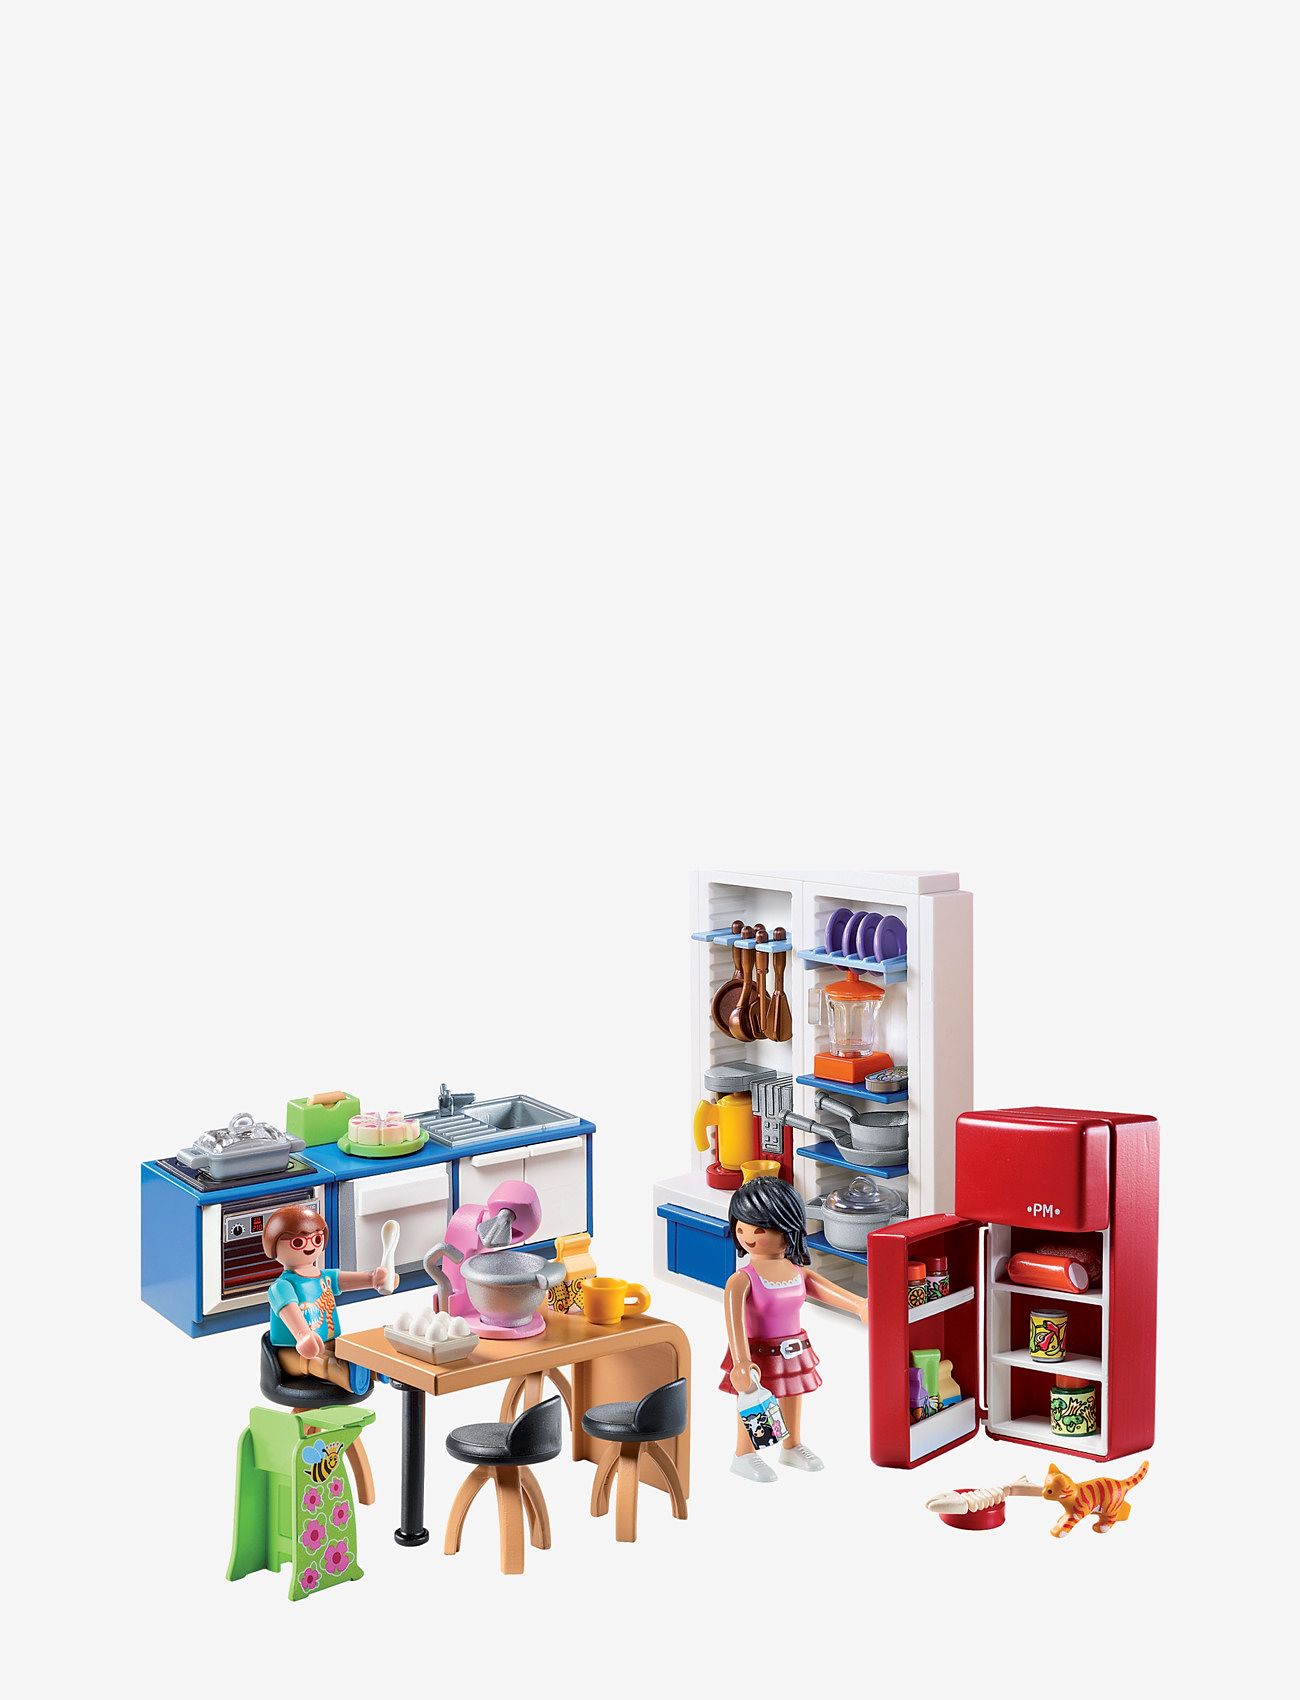 PLAYMOBIL - PLAYMOBIL Dollhouse Familjekök - 70206 - lägsta priserna - multicolored - 1